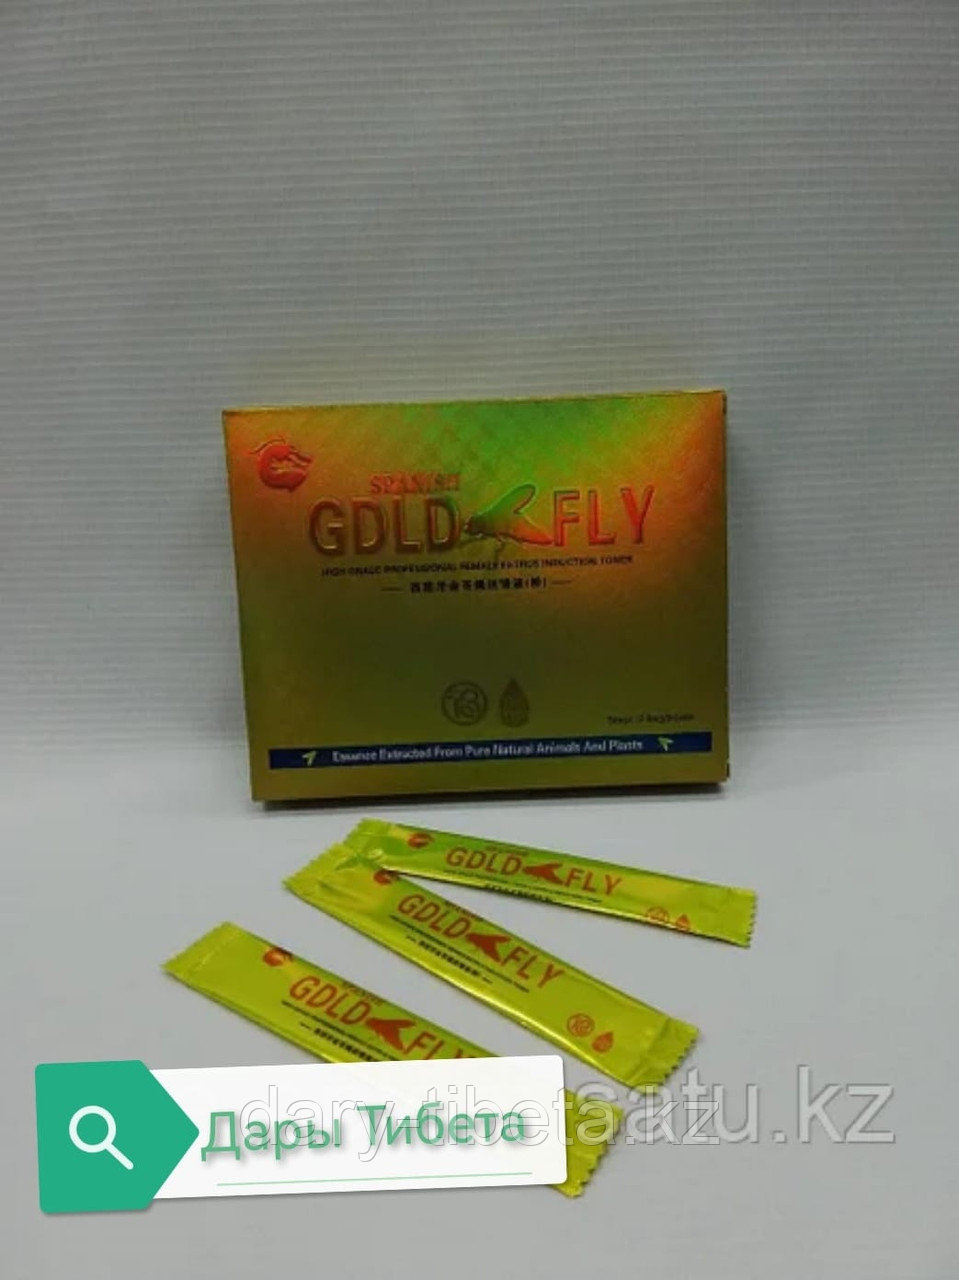 Шпанская мушка ( Gold Fly ) 5 мг - Женский возбудитель - 12 шт